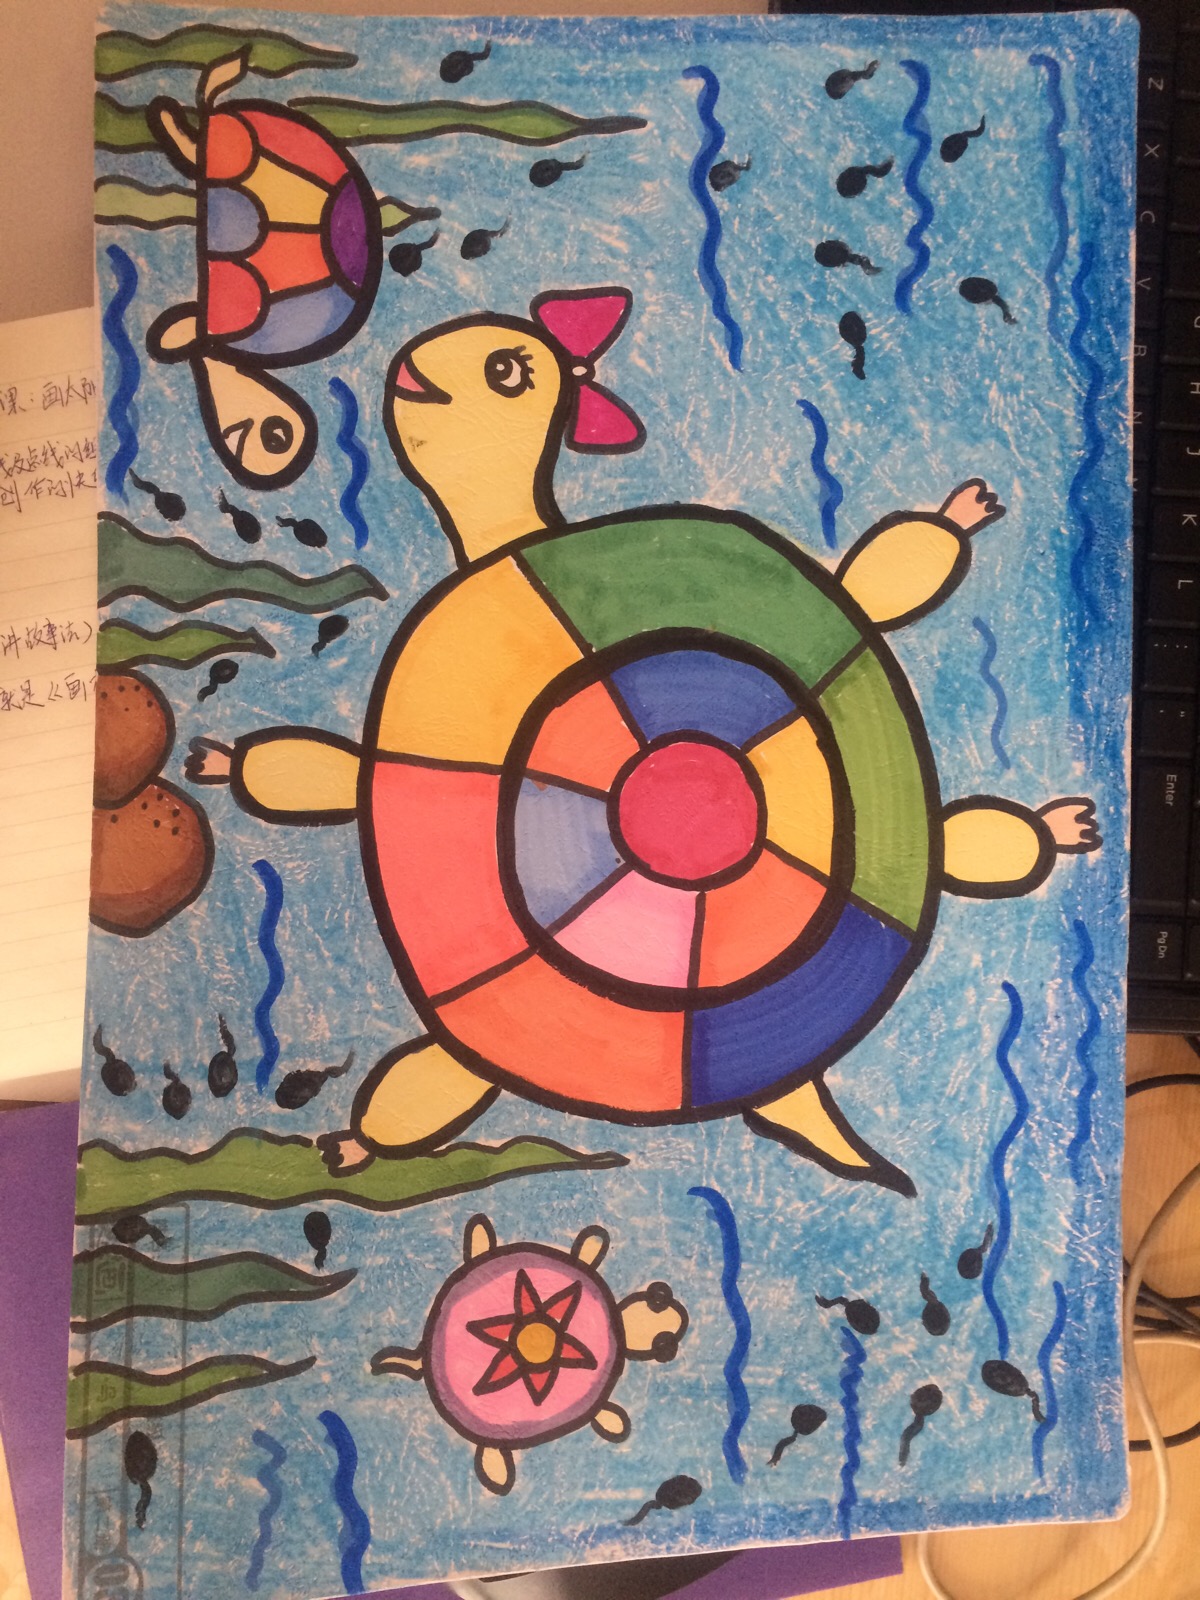 儿童画乌龟简单画法图片